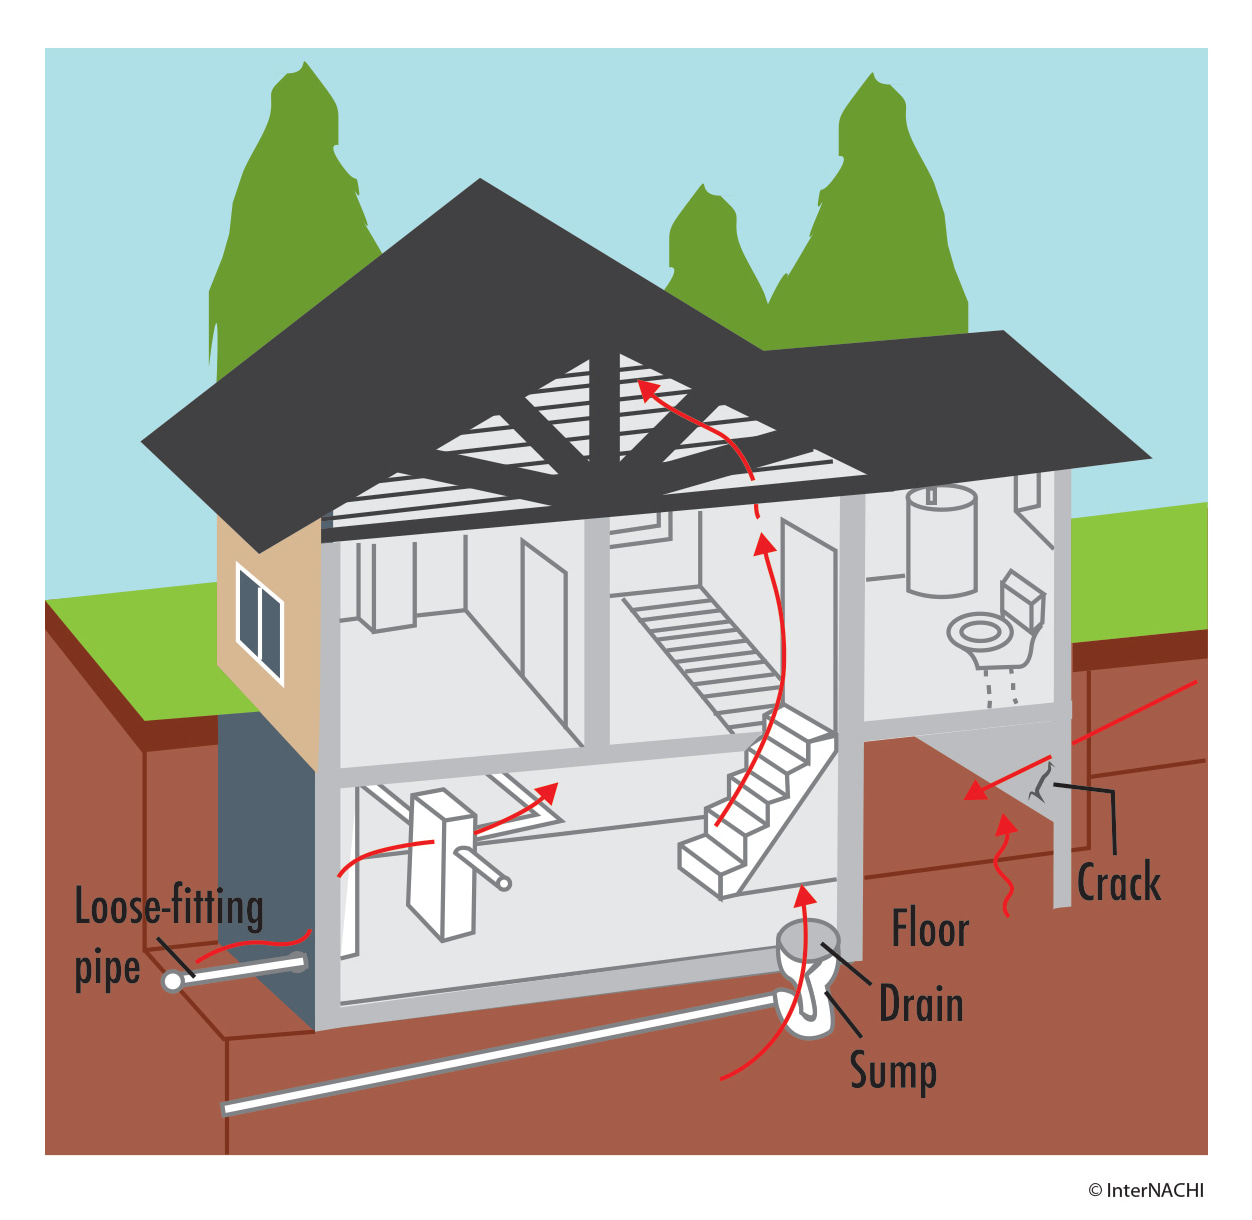 places radon can enter into the home